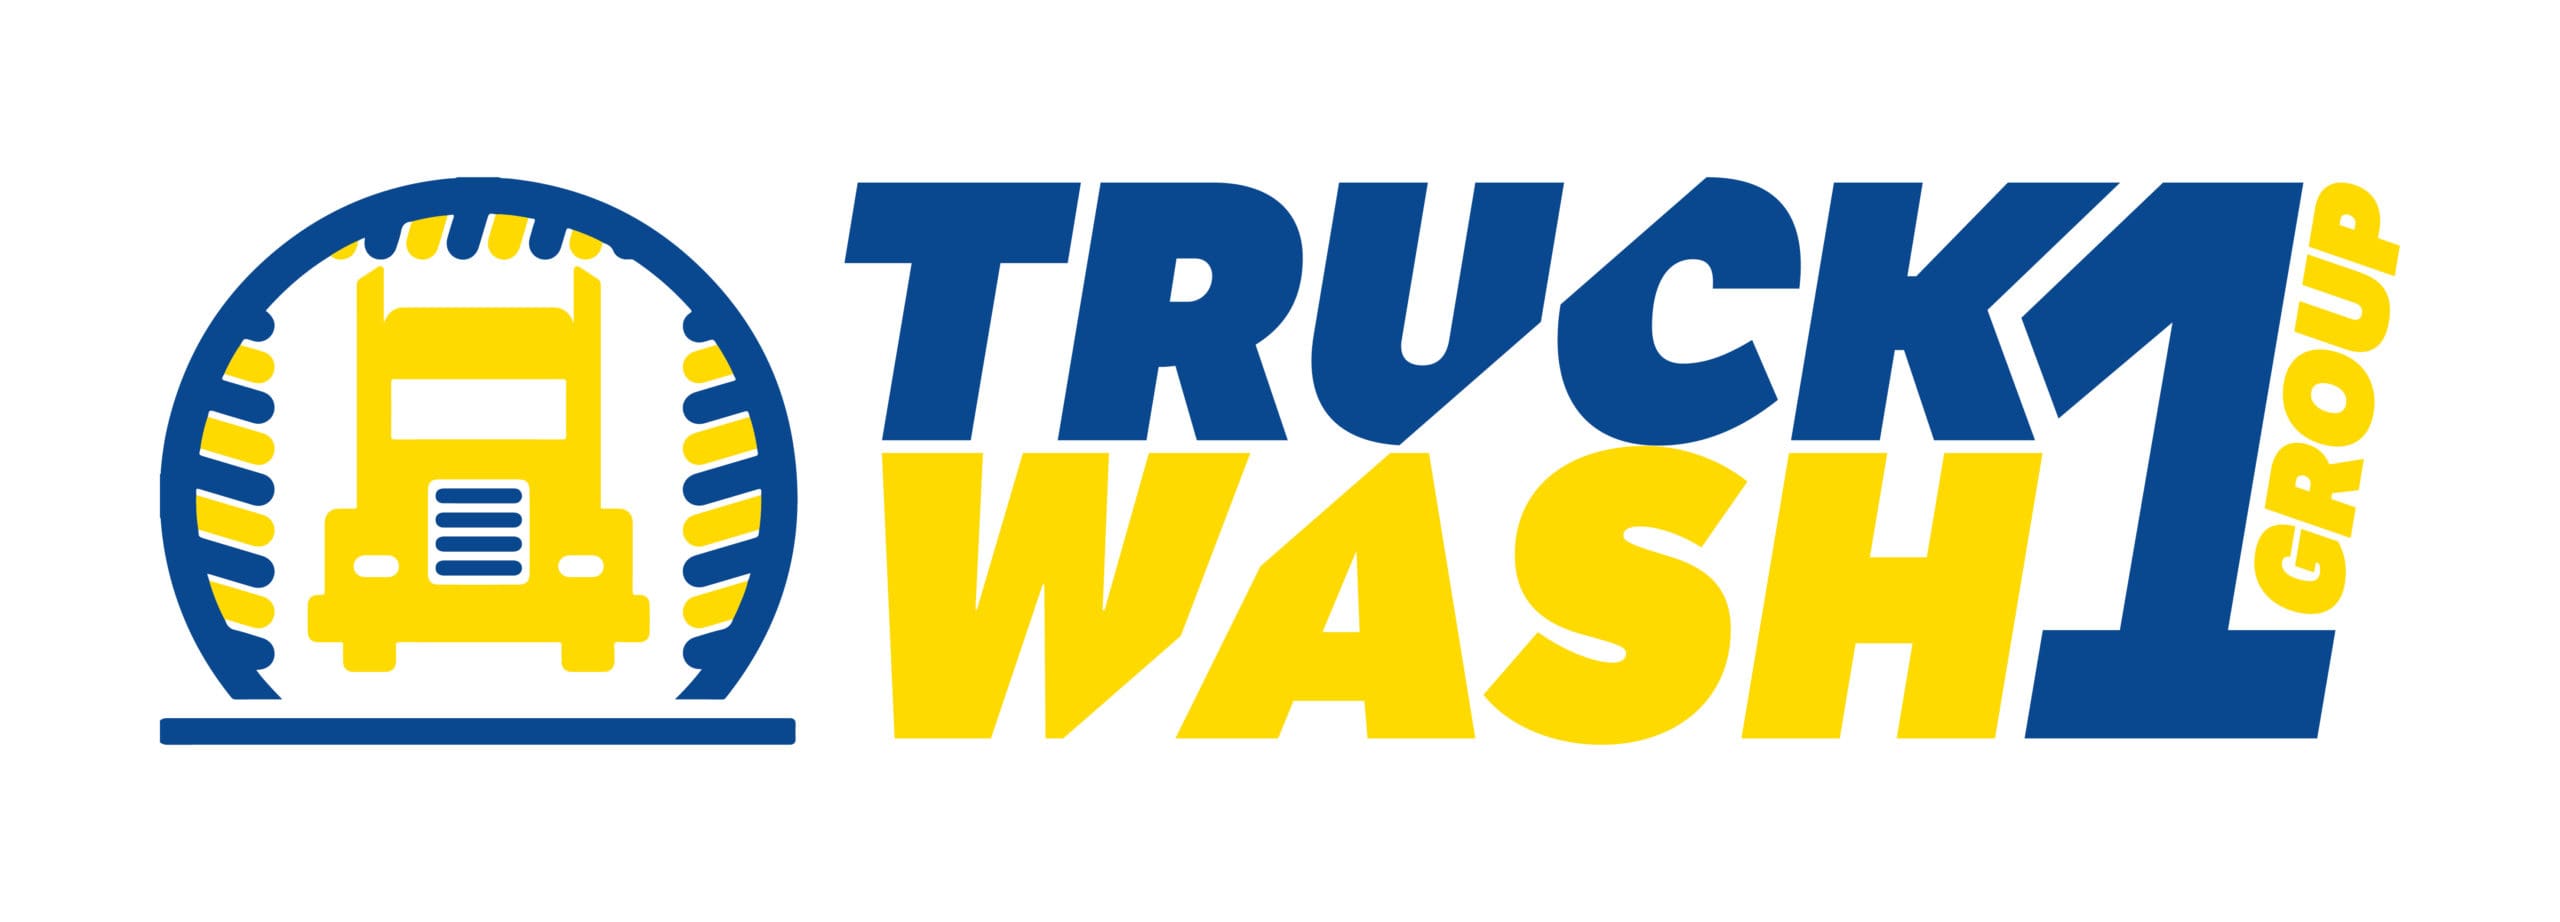 Truckwash1group – Handdoek